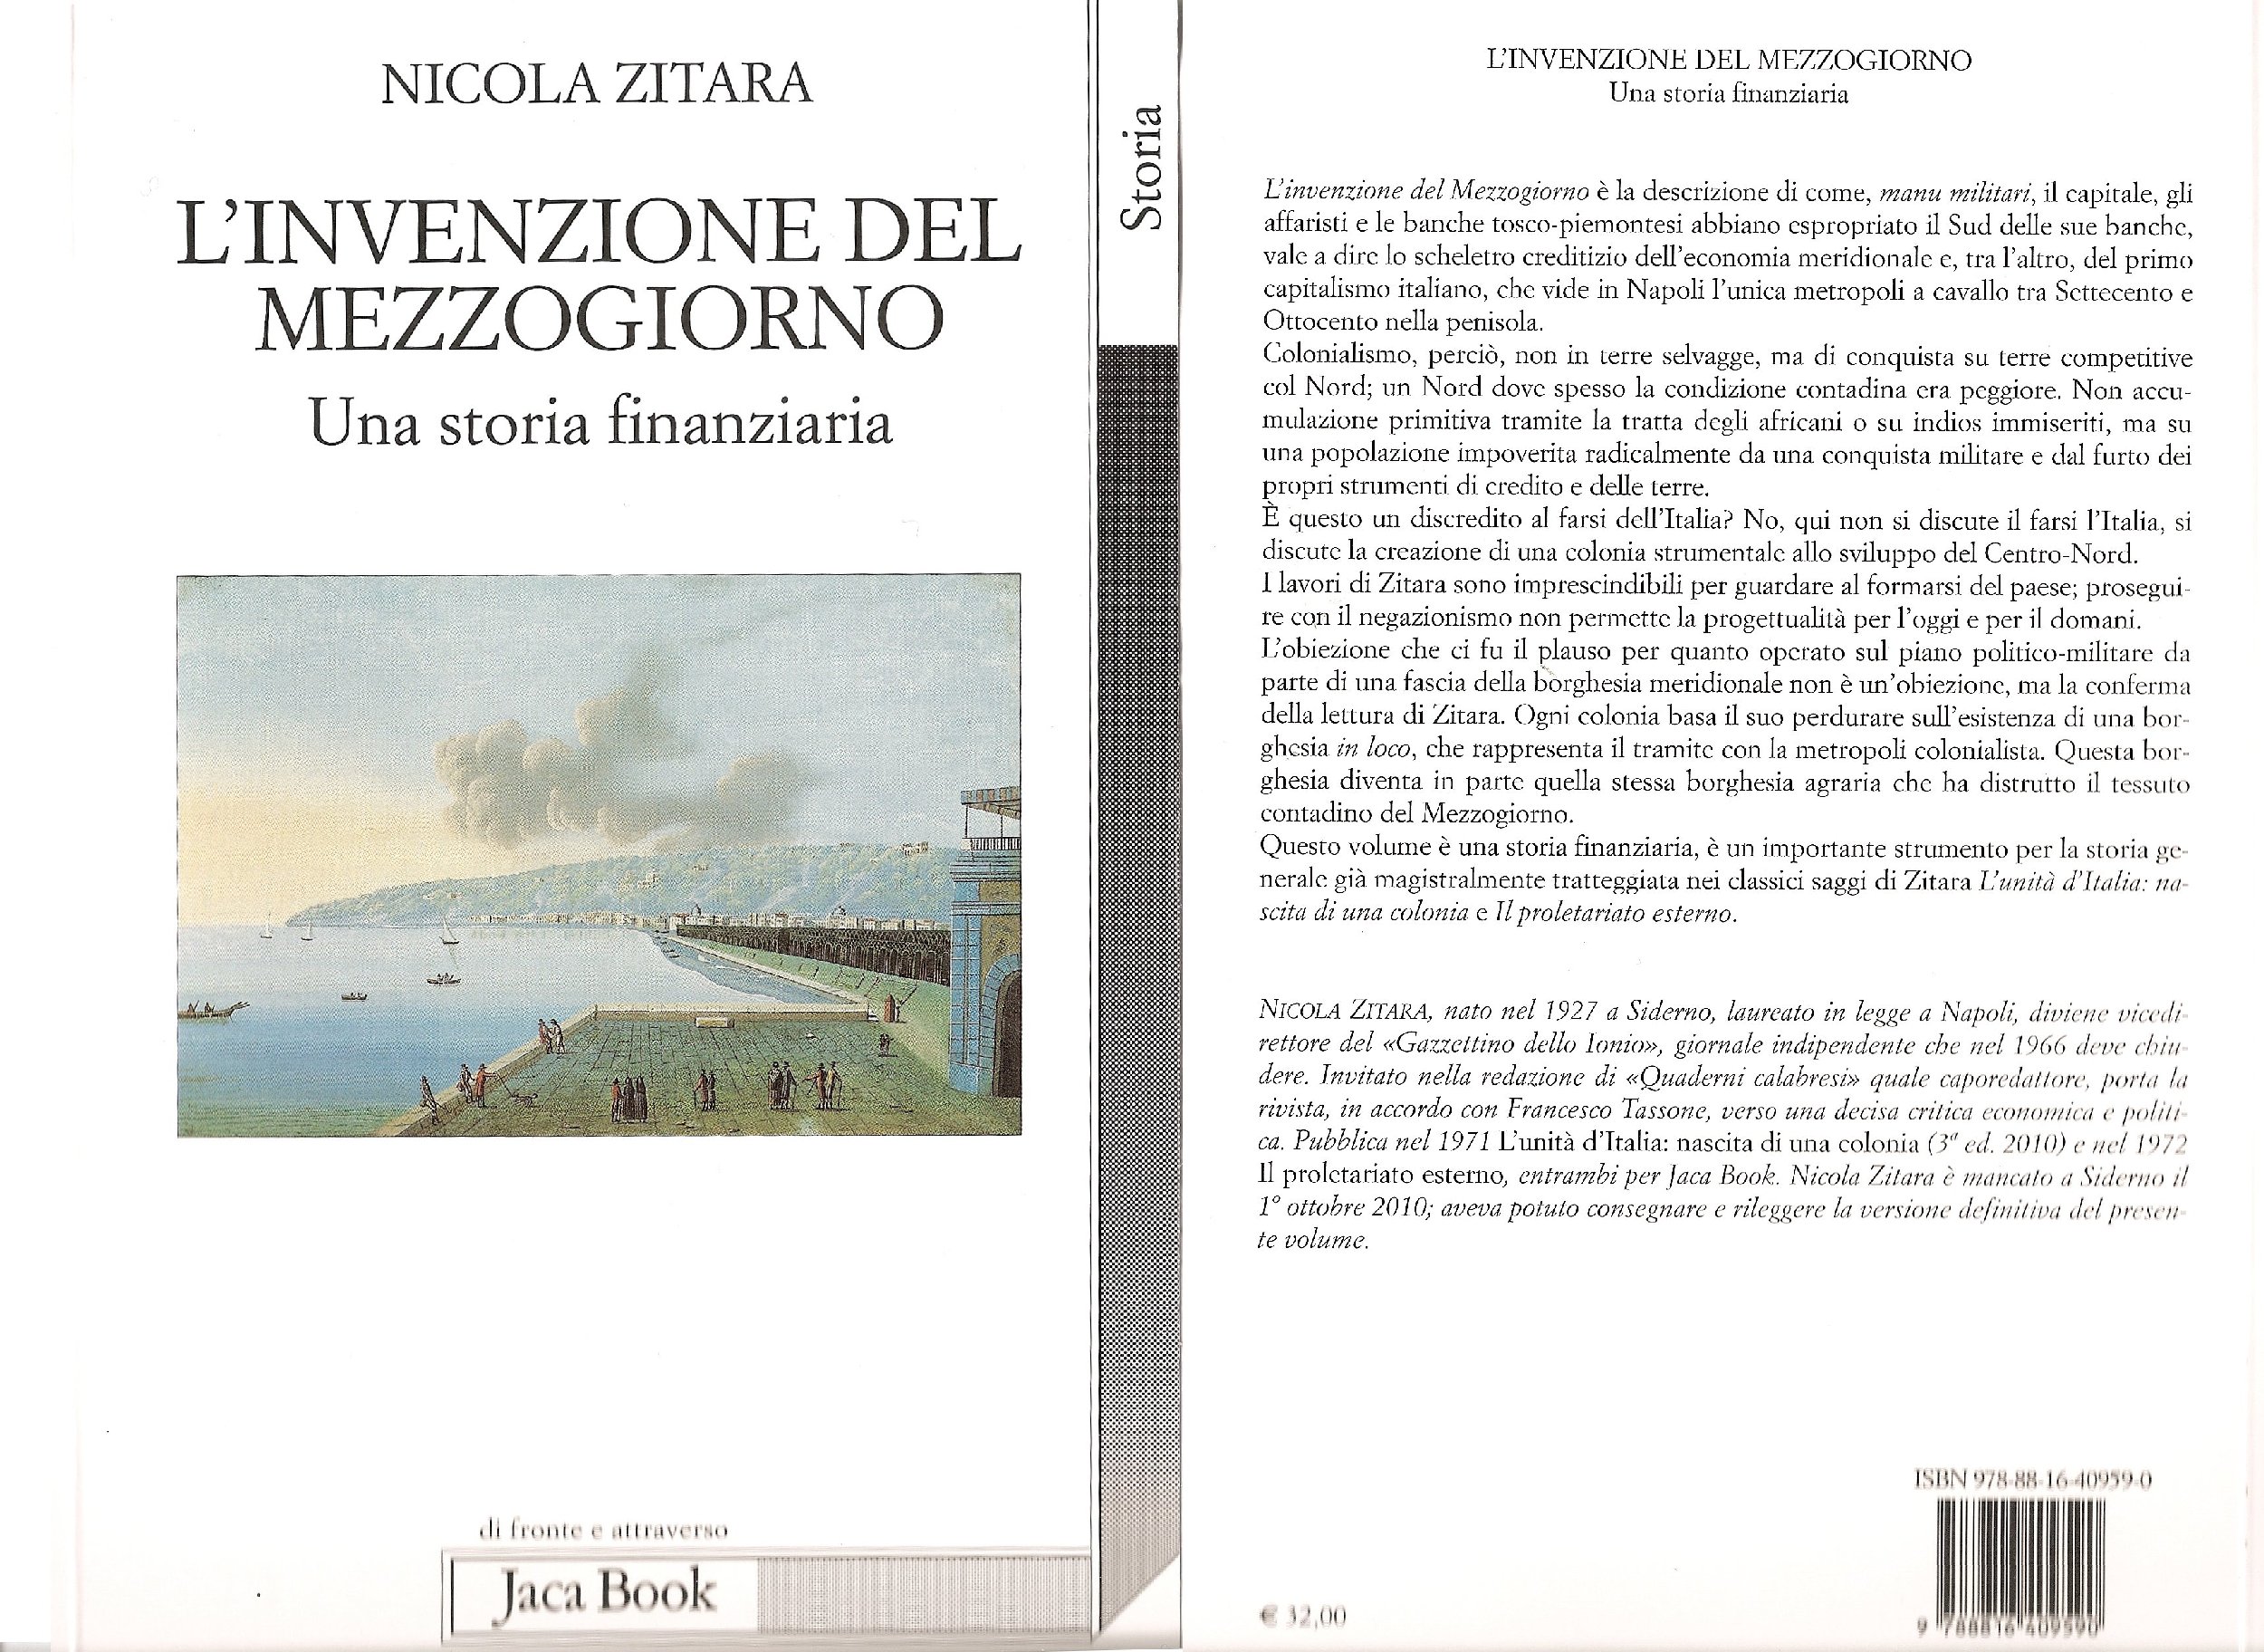 L'ultima pubblicazione cartacea postuma di Nicola Zitara - L'INVENZIONE DEL MEZZOGIORNO - Una storia finanziaria (gennaio 2011 - Jaca Book)